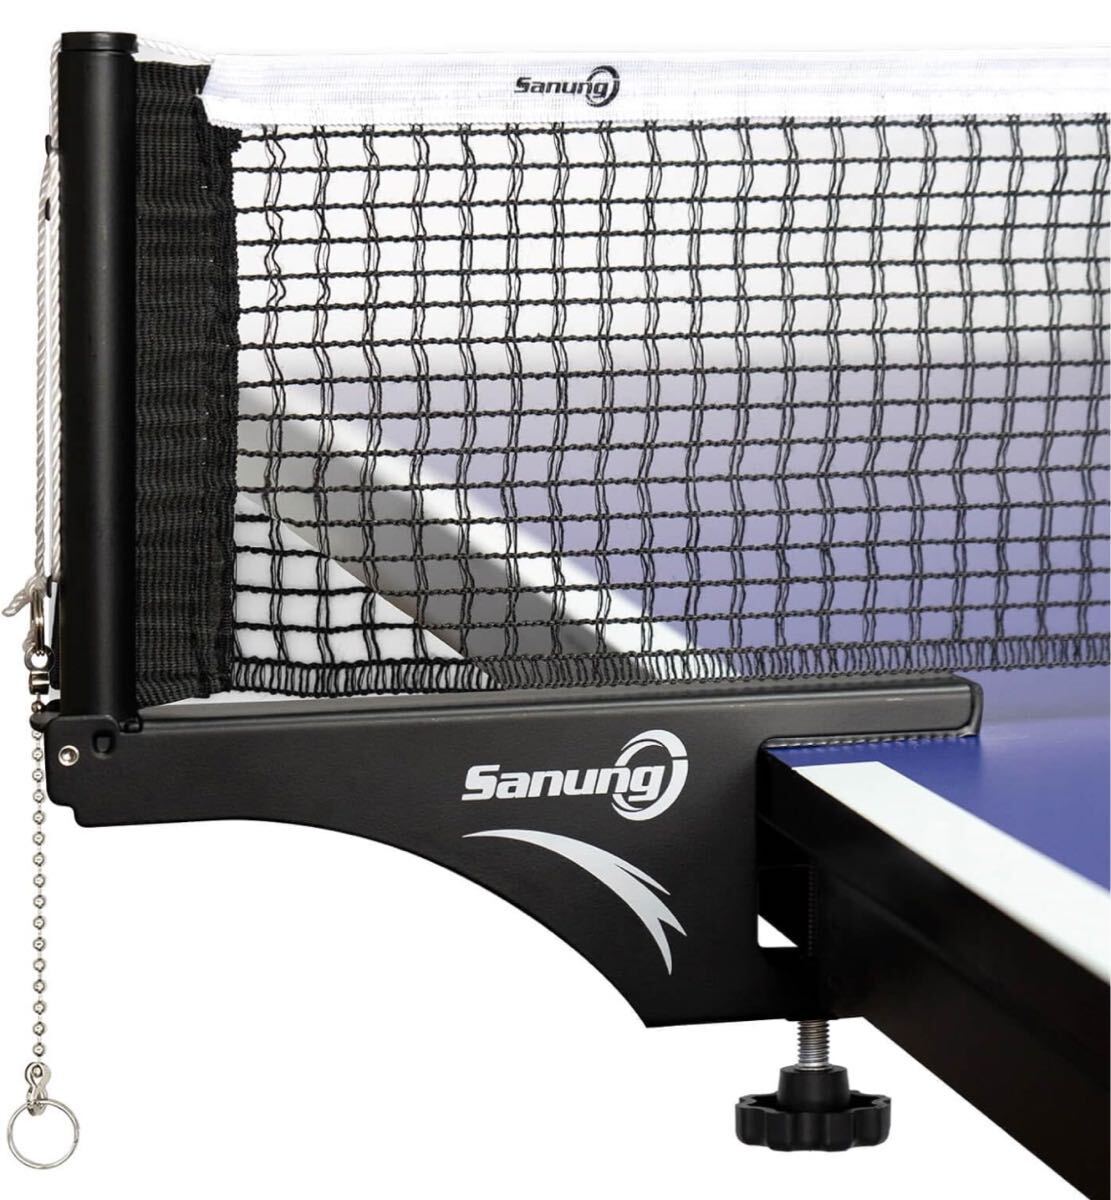 Sanung 卓球ネット 卓球サポーター S207 折畳可能 卓球用ネットセット 標準 卓球台 適用 螺旋式 滑り止 ピンポンネット ピンポンサポーター